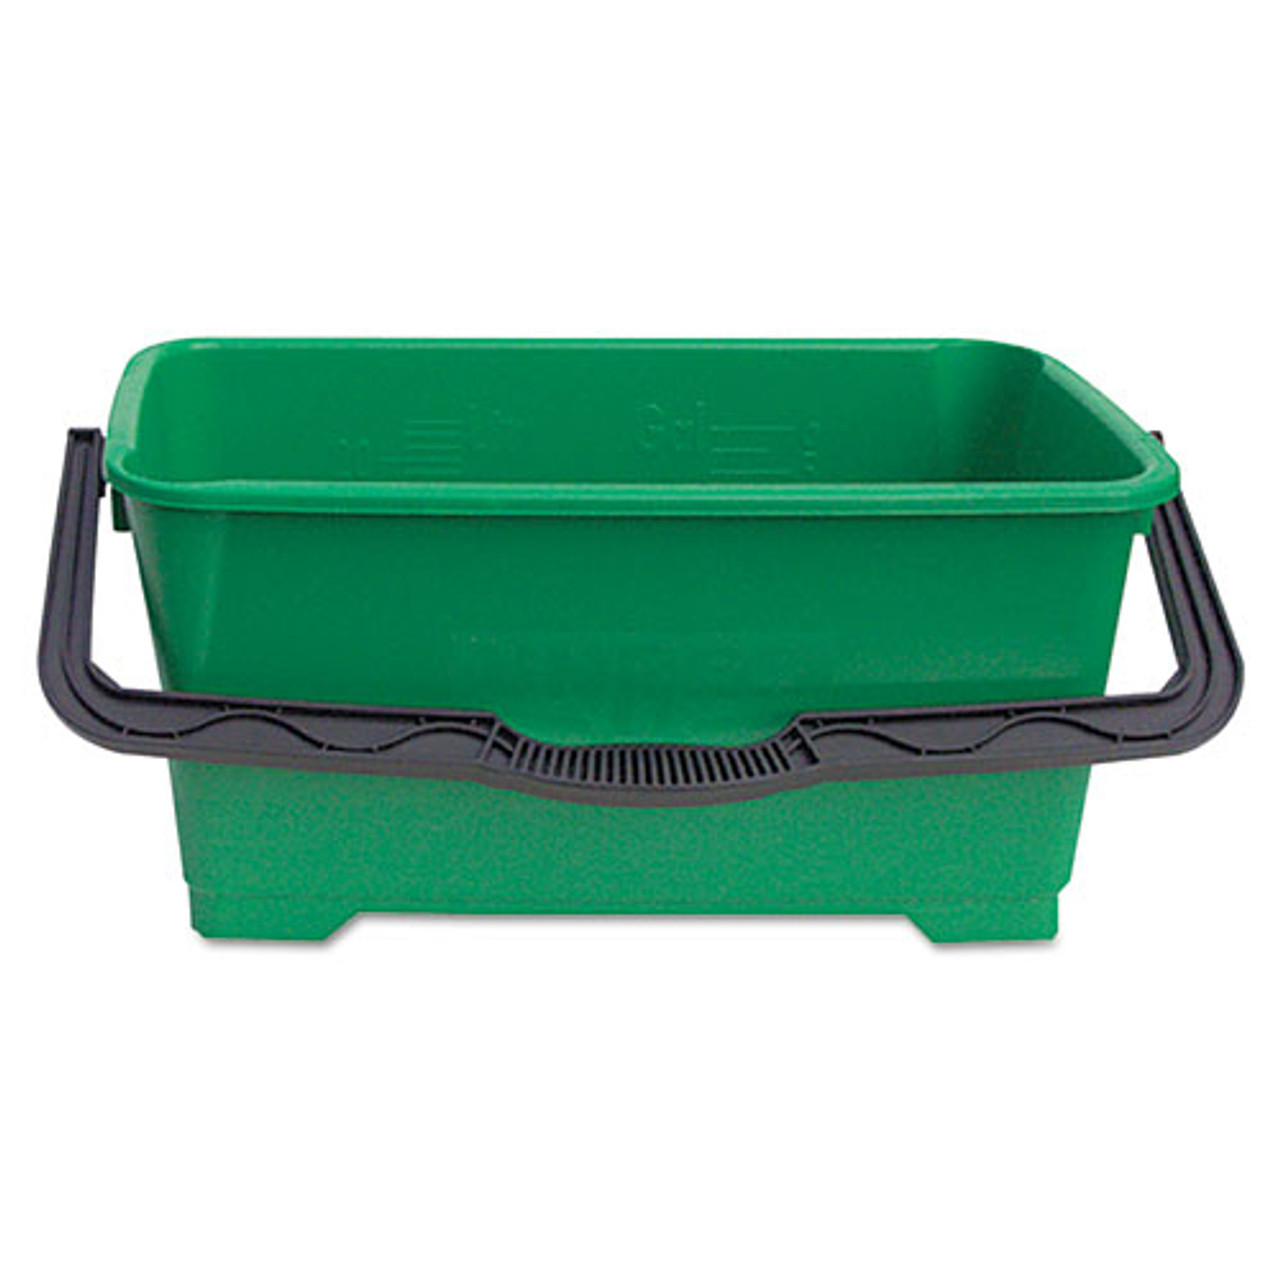 Cleaning Bucket, 6 Qt., Green, Polypropylene, Winco PPL-6G